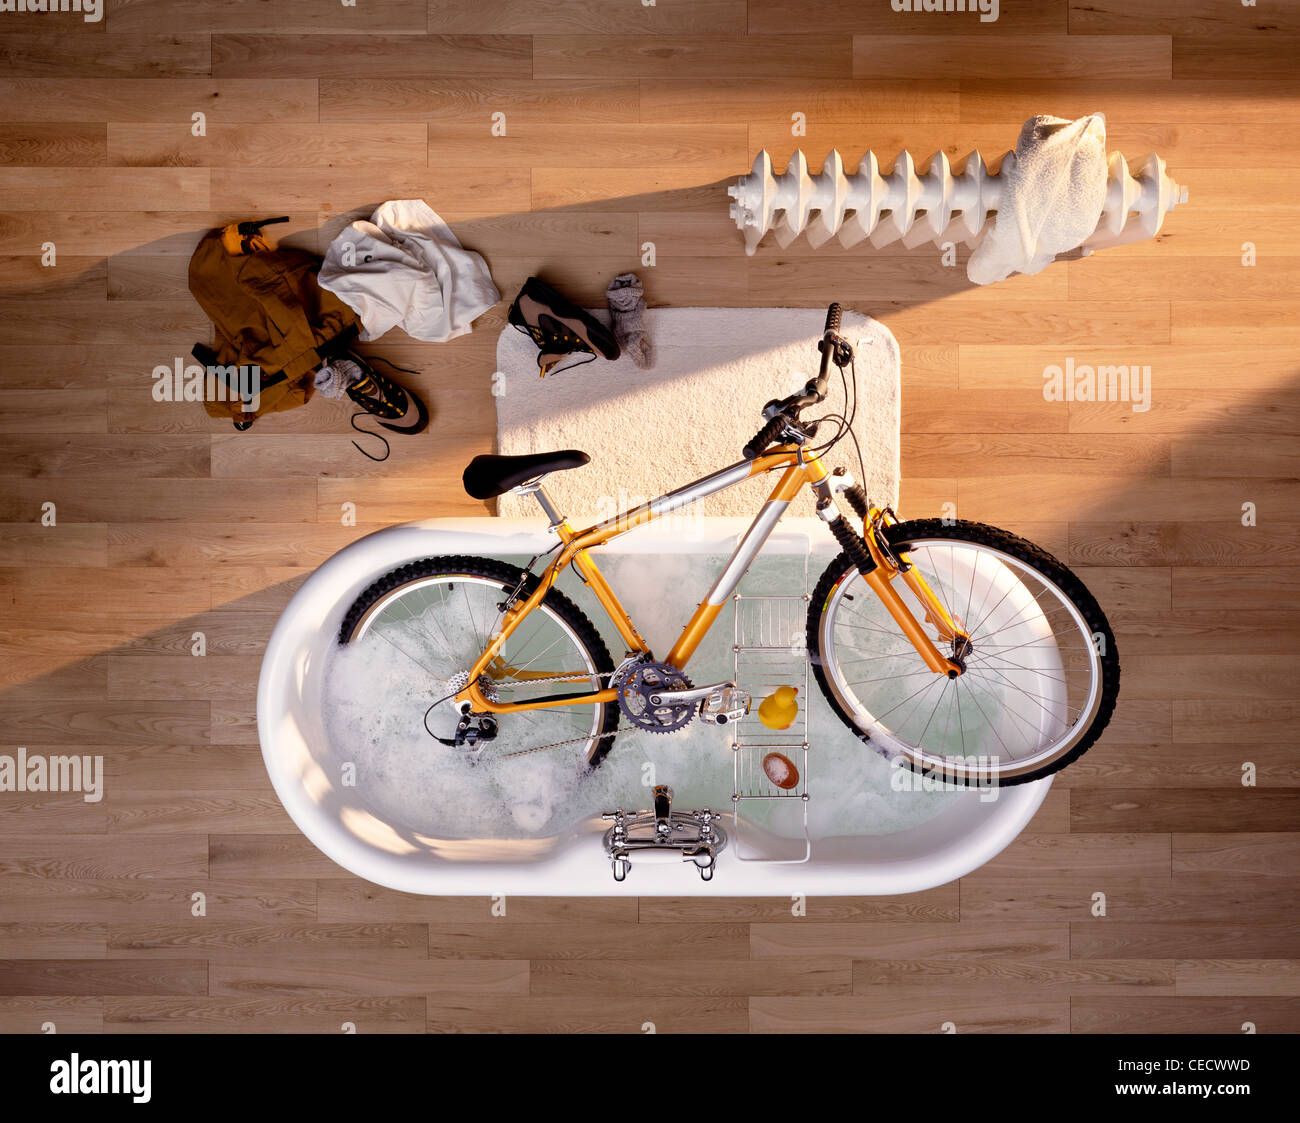 Un vélo de montagne en cours de nettoyage dans un bain. Banque D'Images